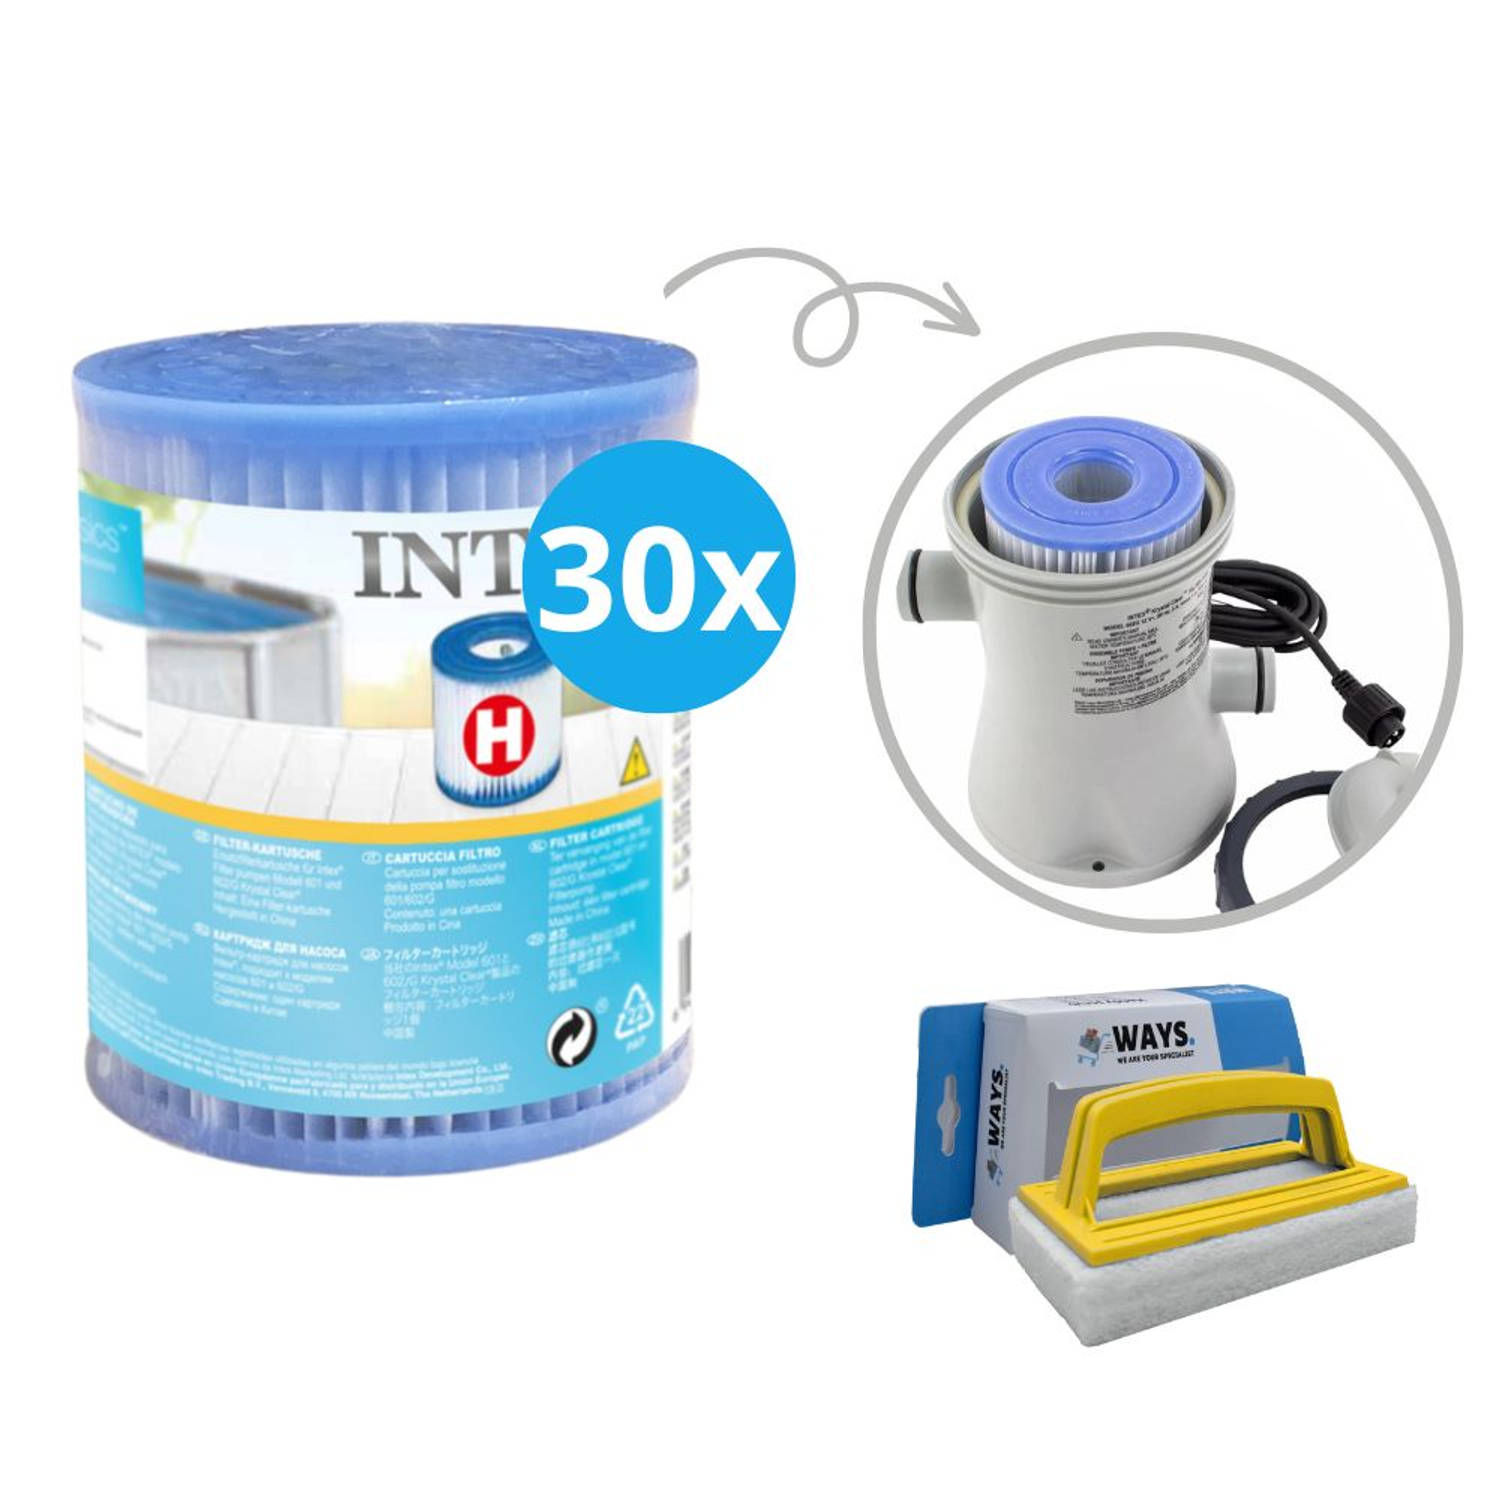 Intex Voordeelverpakking H Filters Geschikt Voor Filterpomp 28602gs 30 Stuks & Ways Scrubborstel